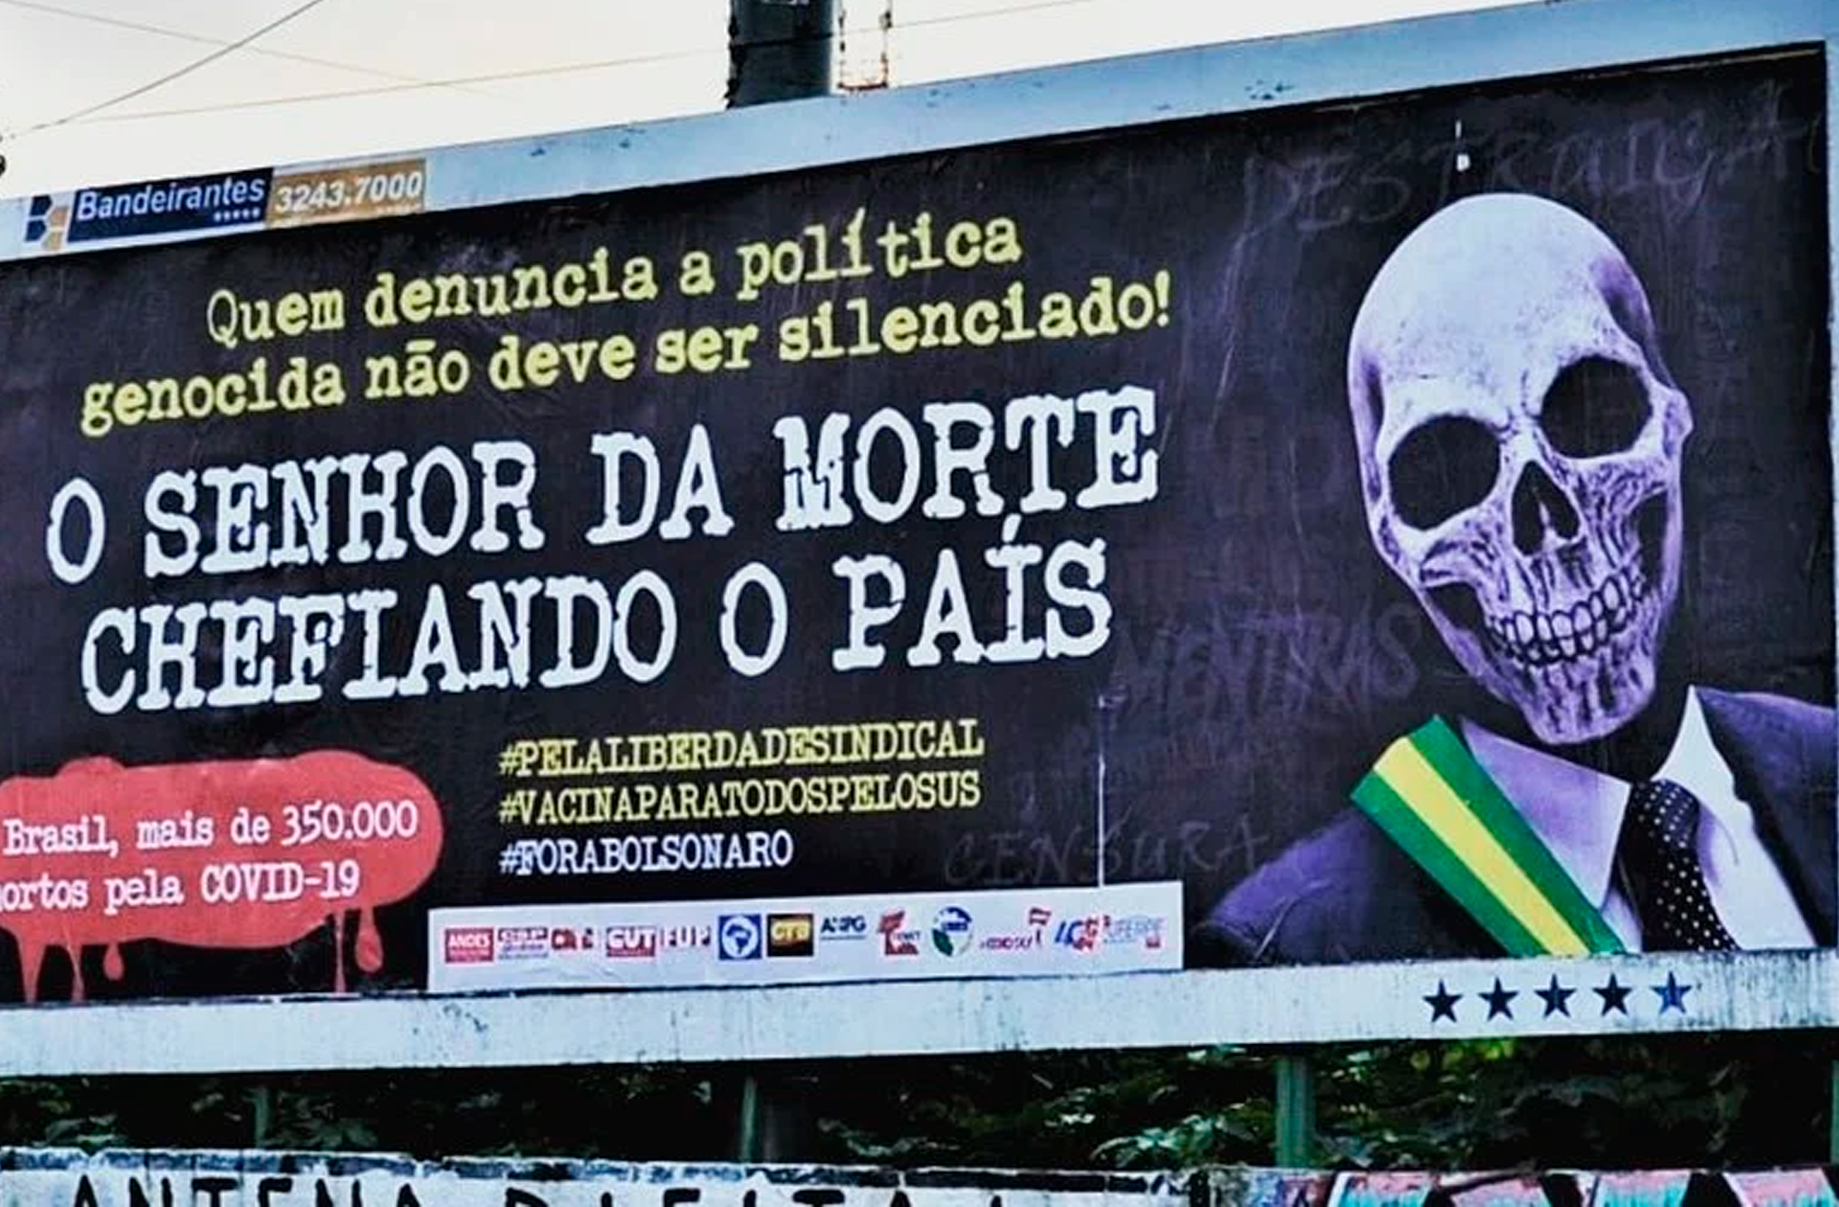 Outdoors denunciam política genocida do governo Bolsonaro